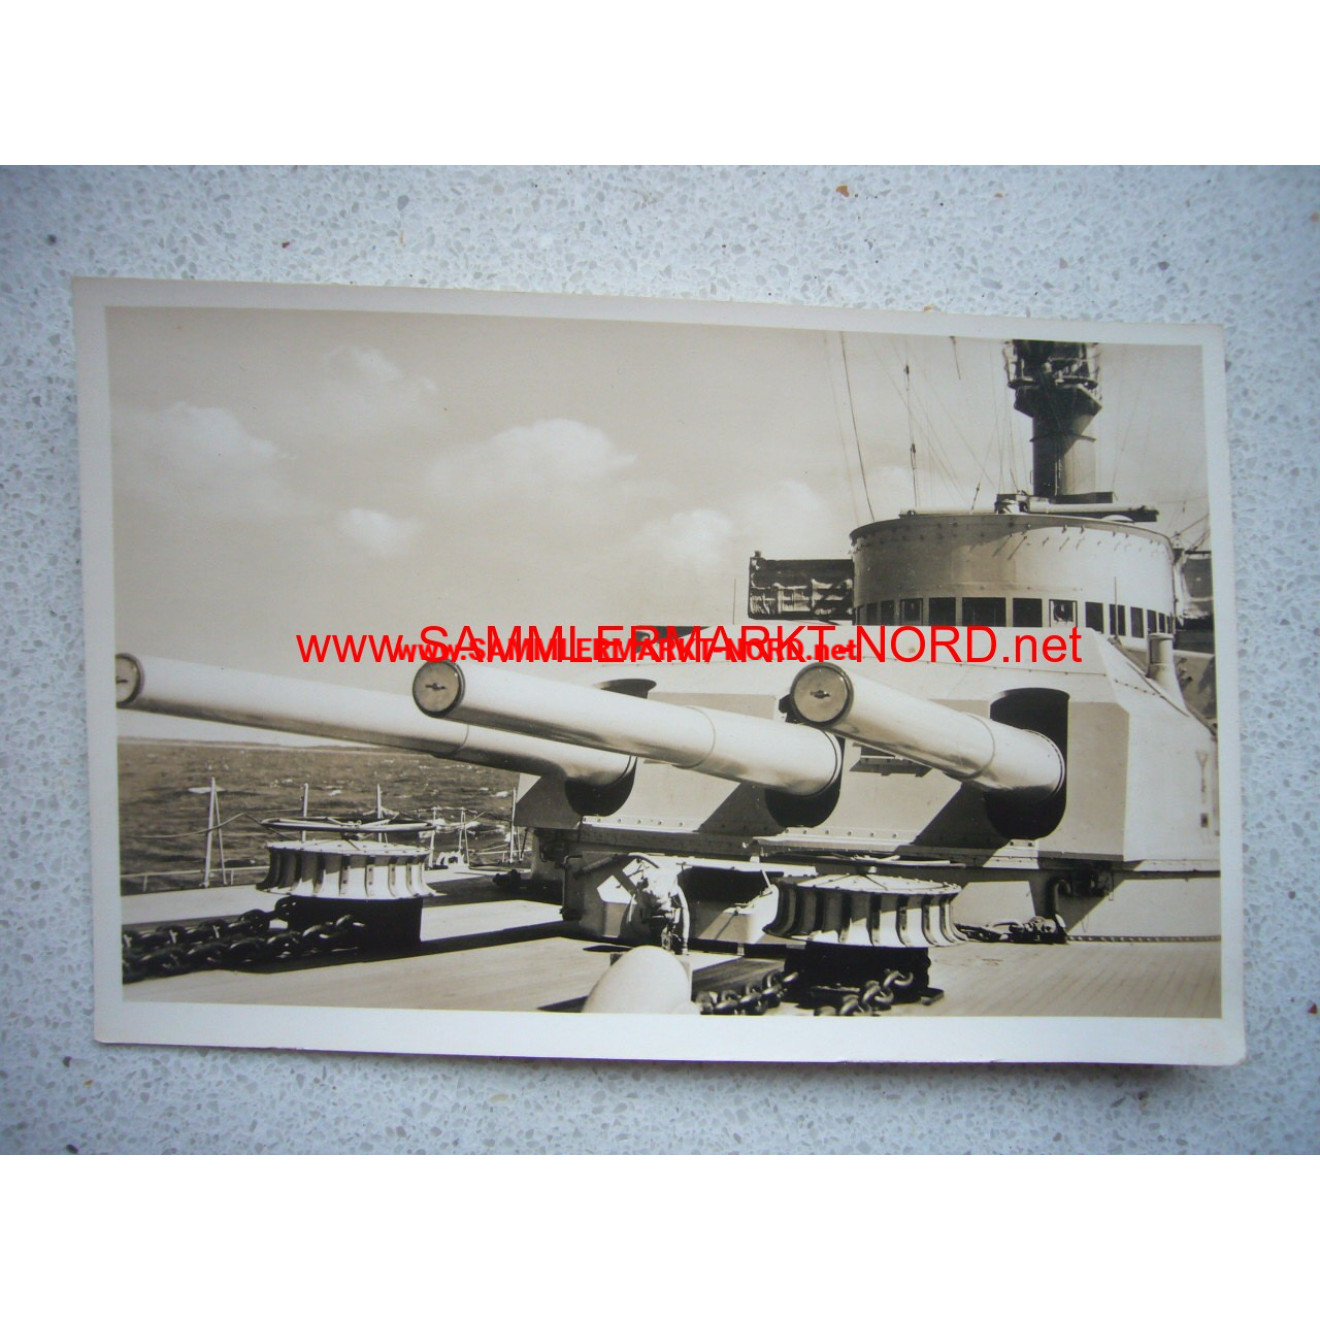 Kriegsmarine - Battleship "Germany" - Postcard